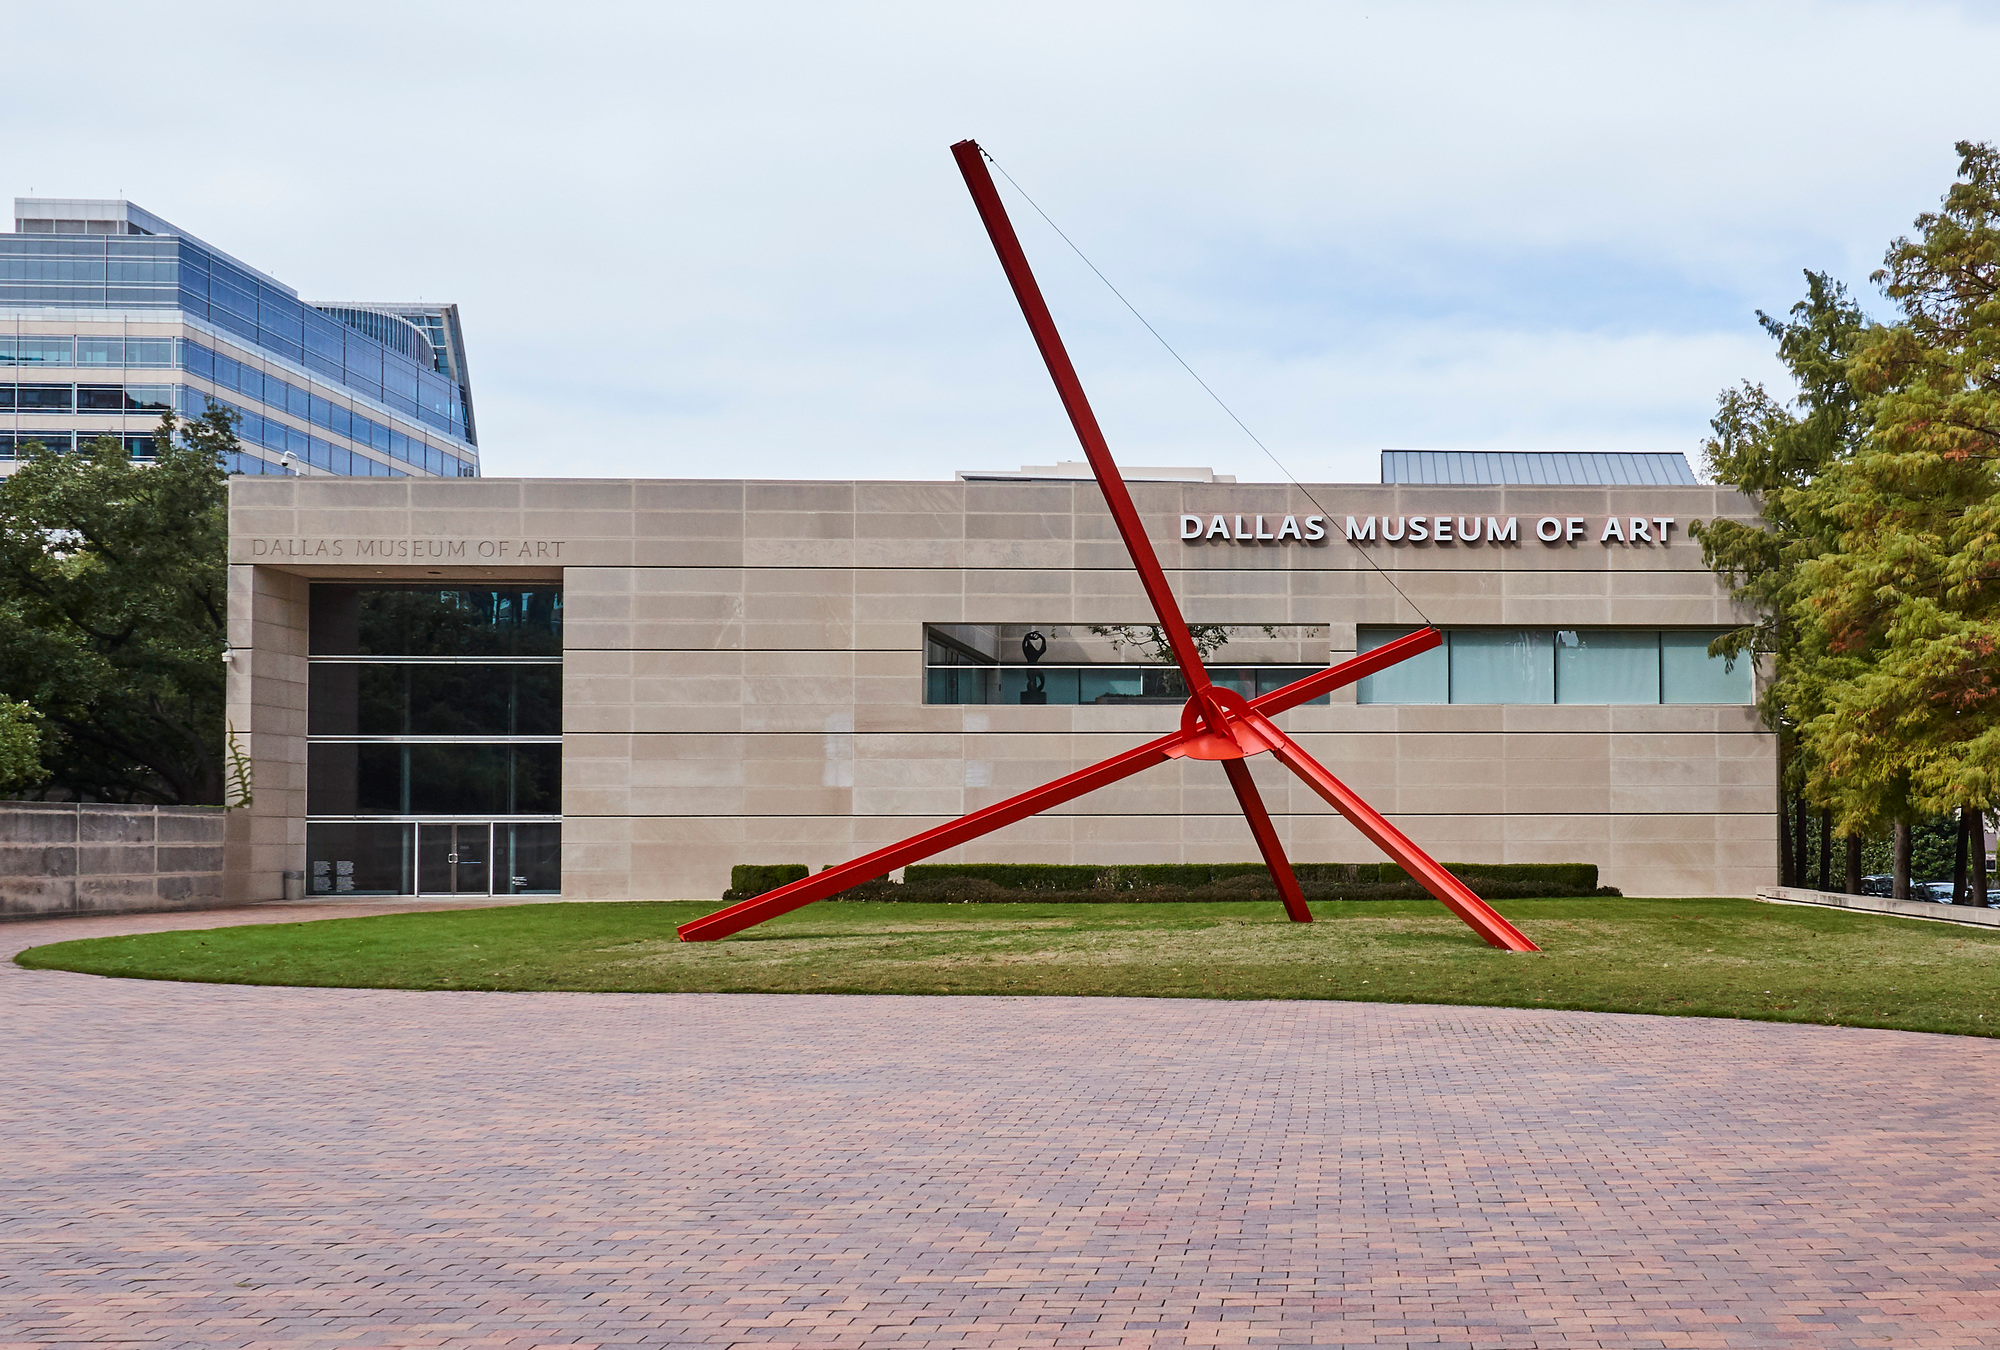 Reimagining The Dallas Museum of Art